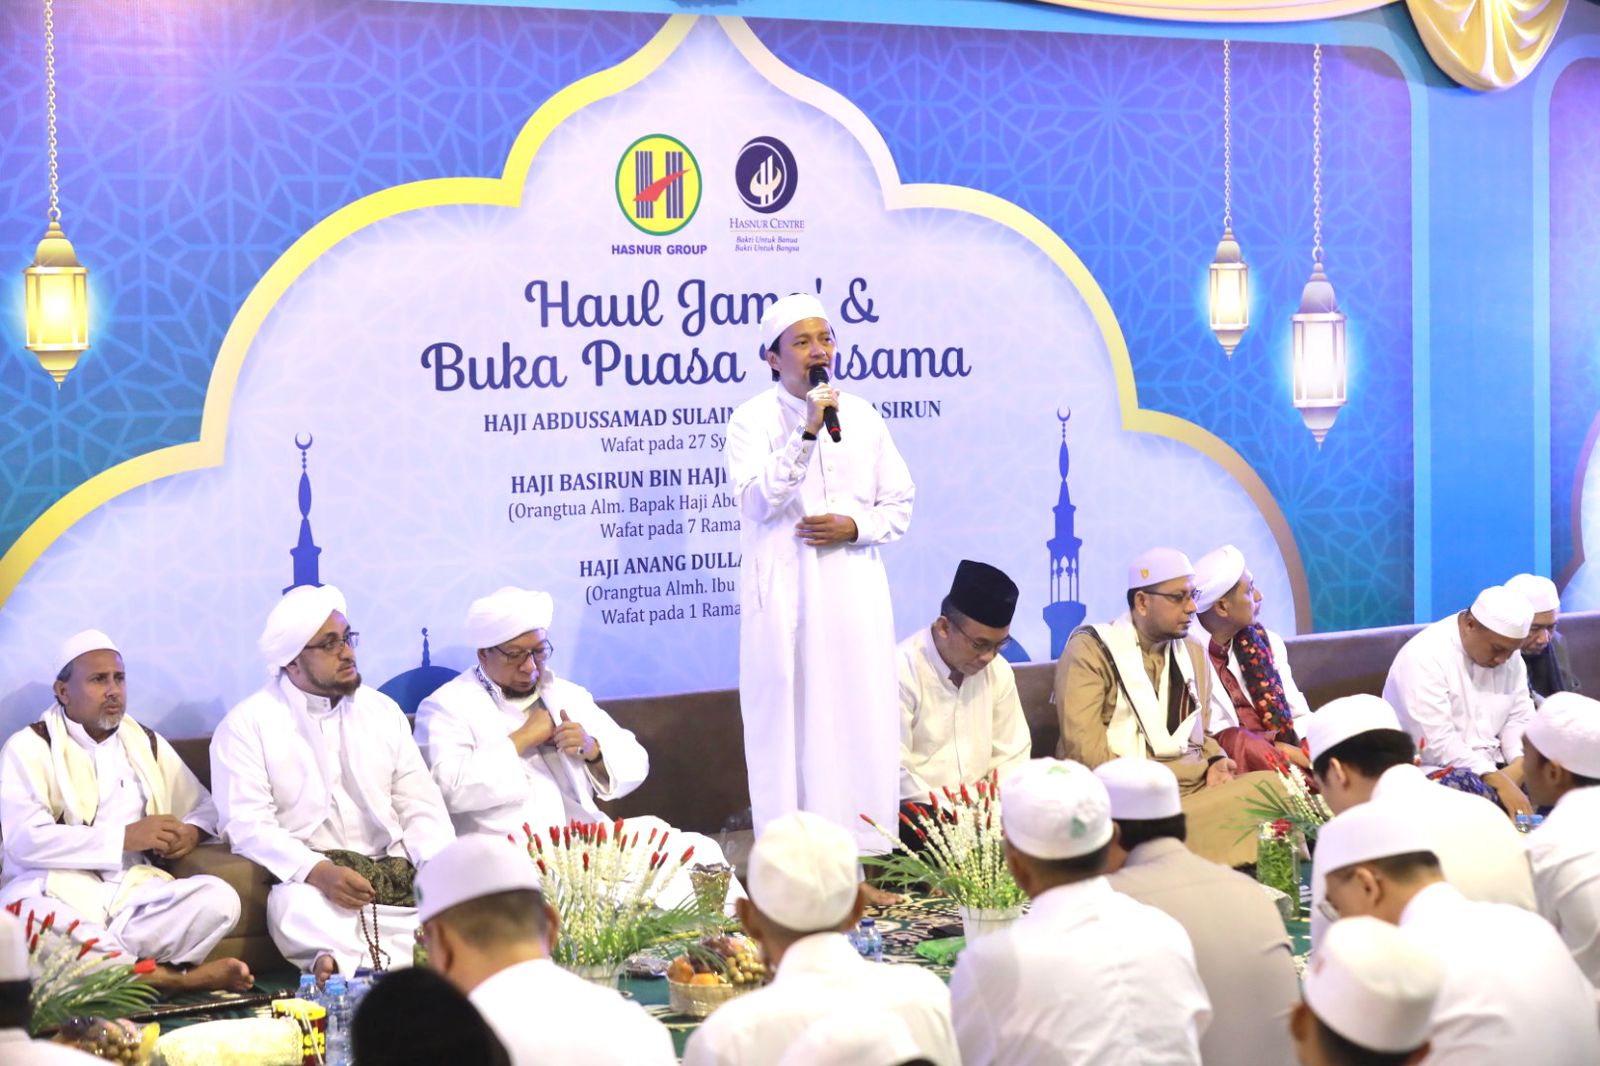 Keluarga besar almarhum H. Abddusammad Sulaiman HB dan almarhumah Hj. Nurhayati menggelar acara haul jama